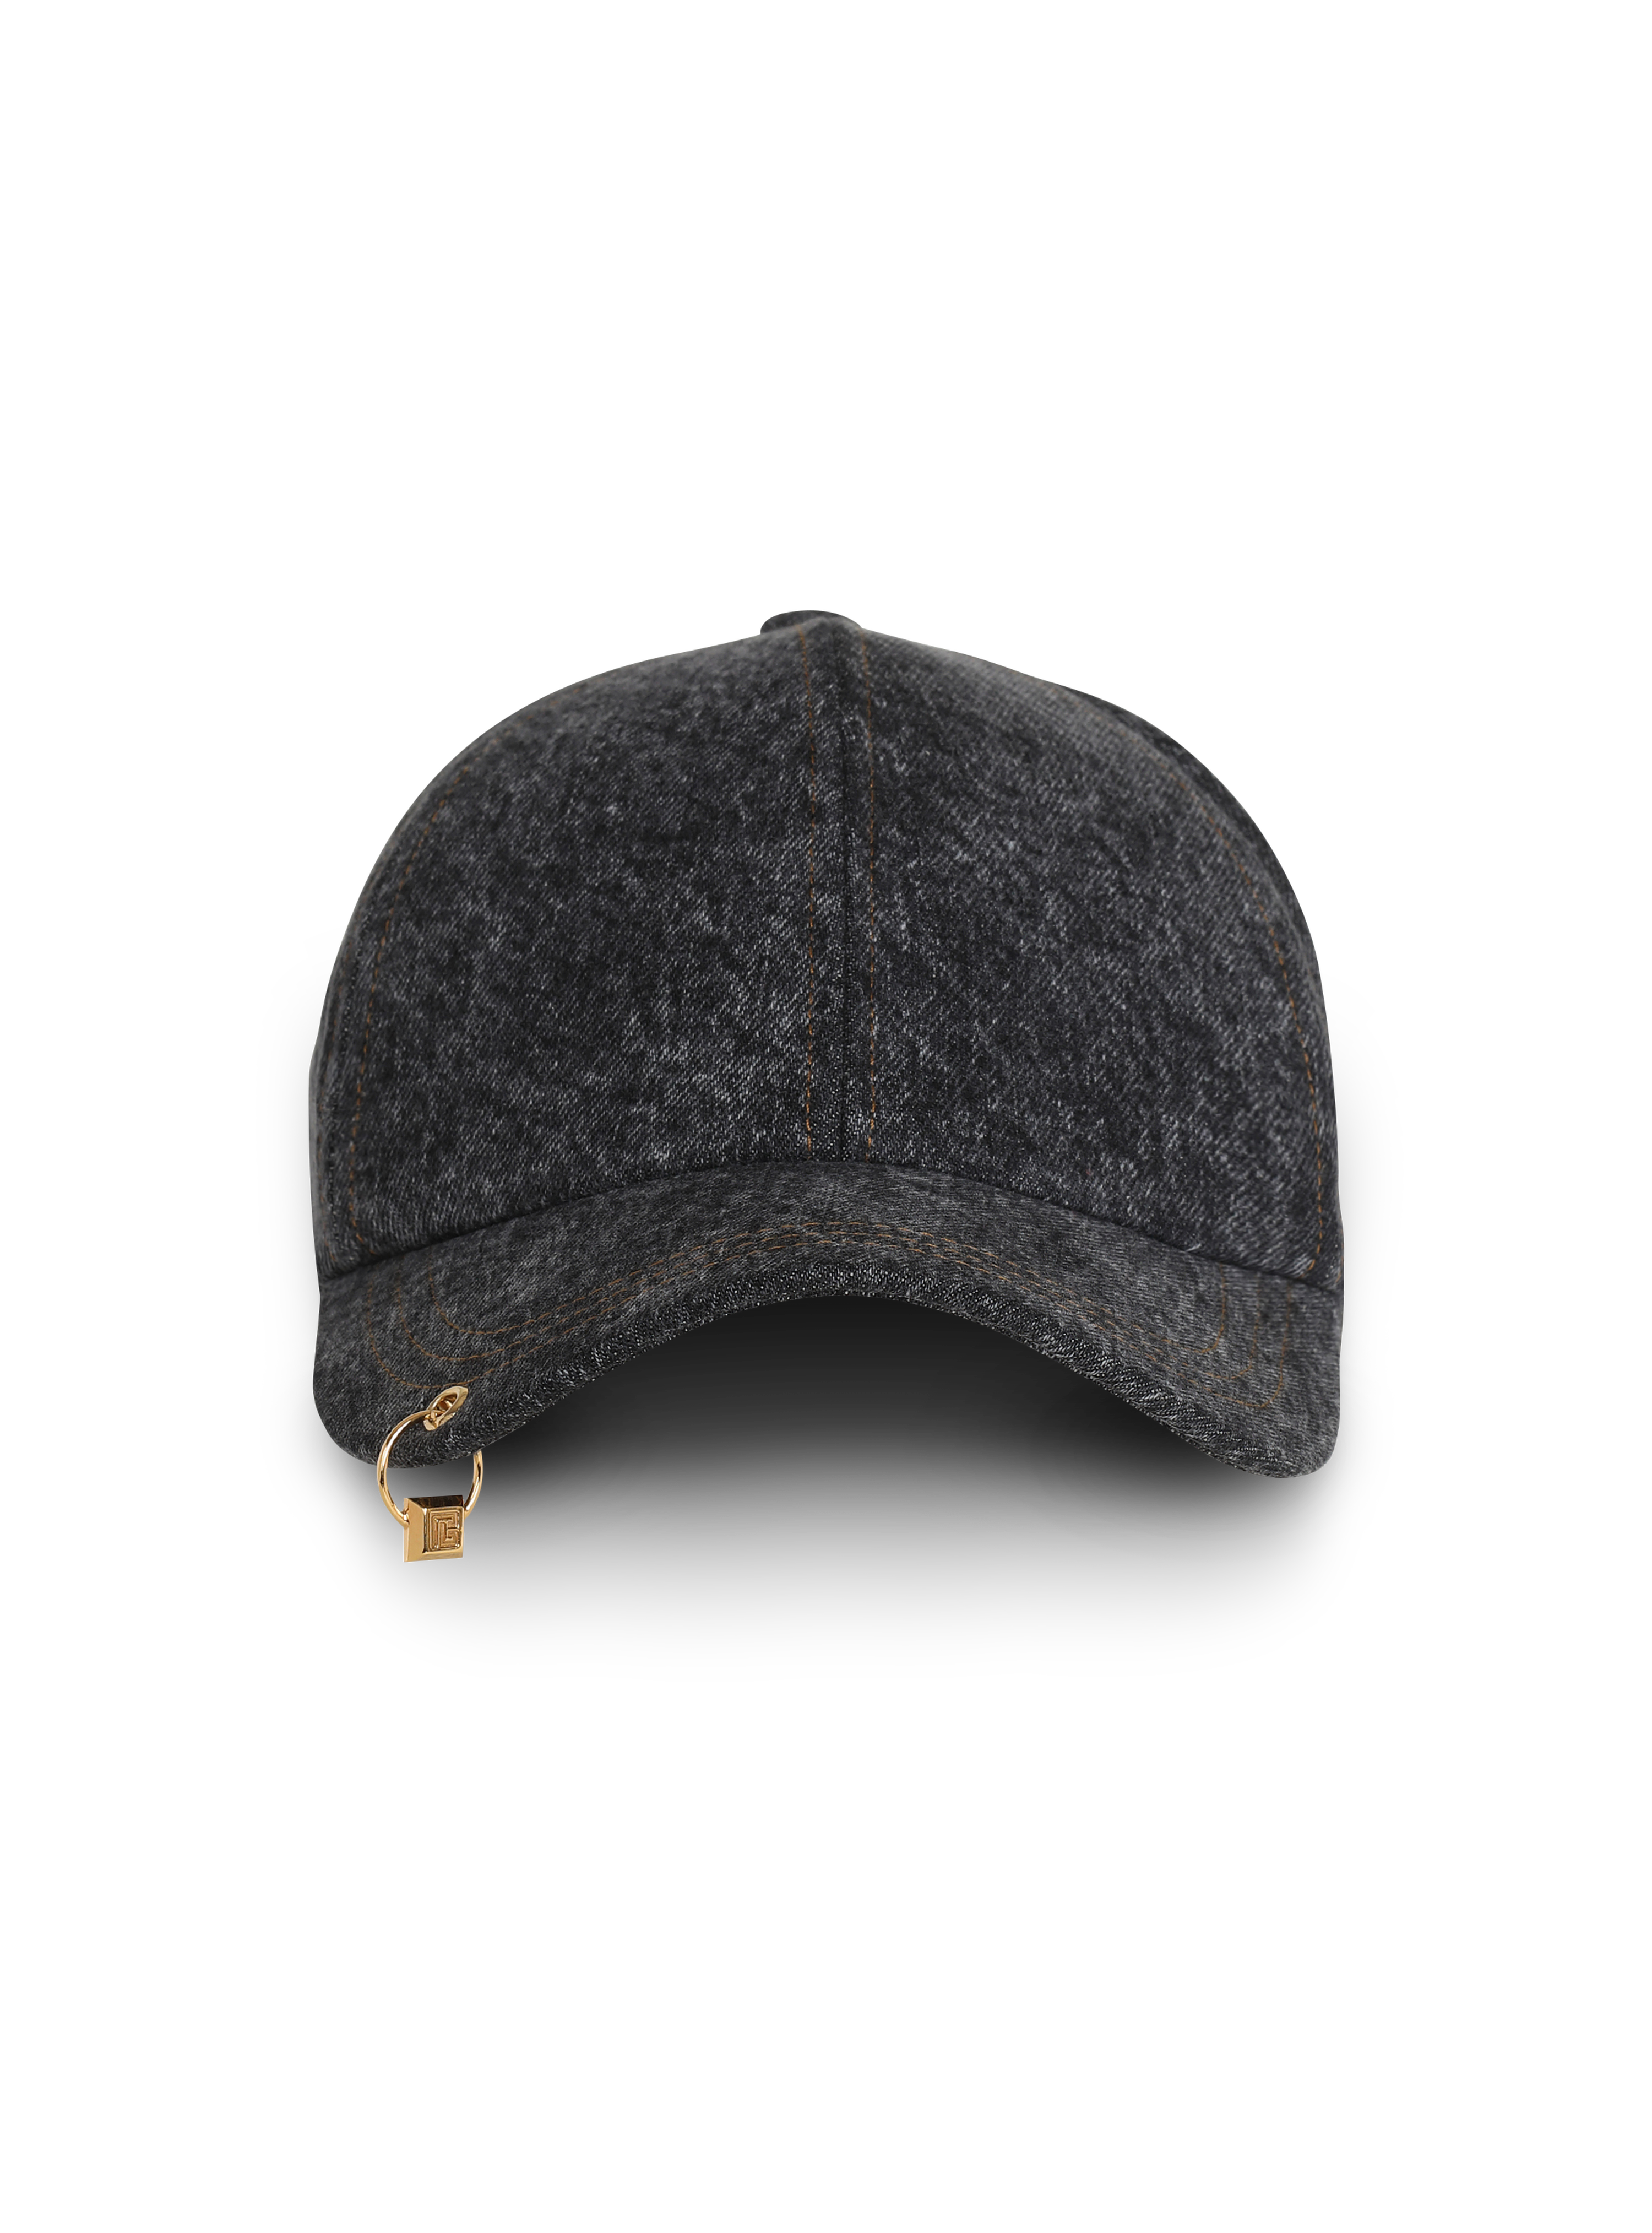 Denim cap with PB pendant, grey